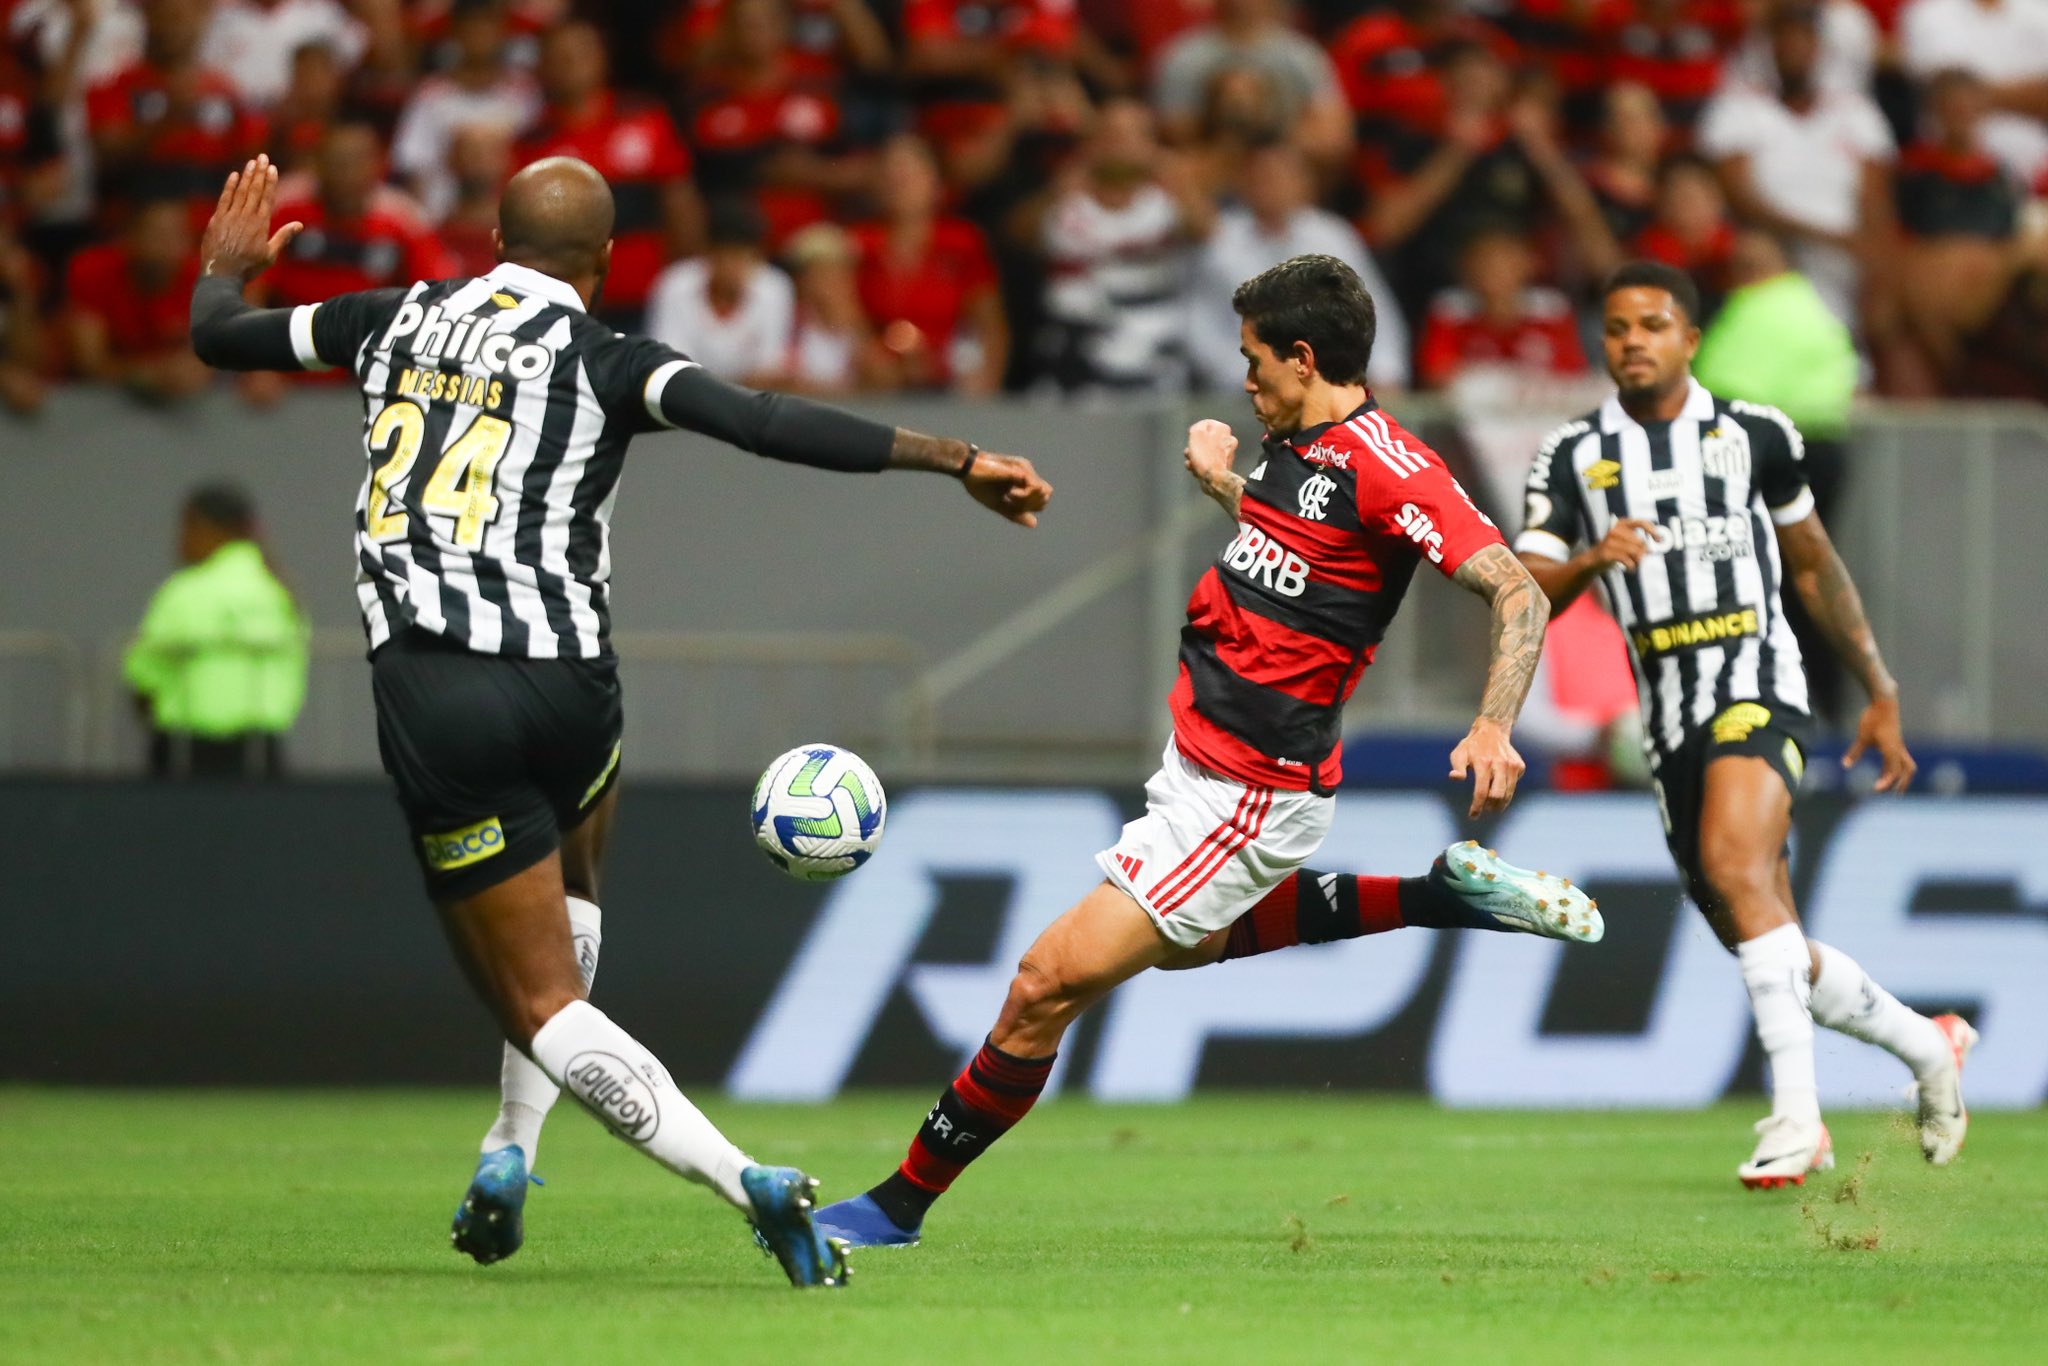 Onde assistir jogo do Flamengo ao vivo – Acompanhe todos os lances